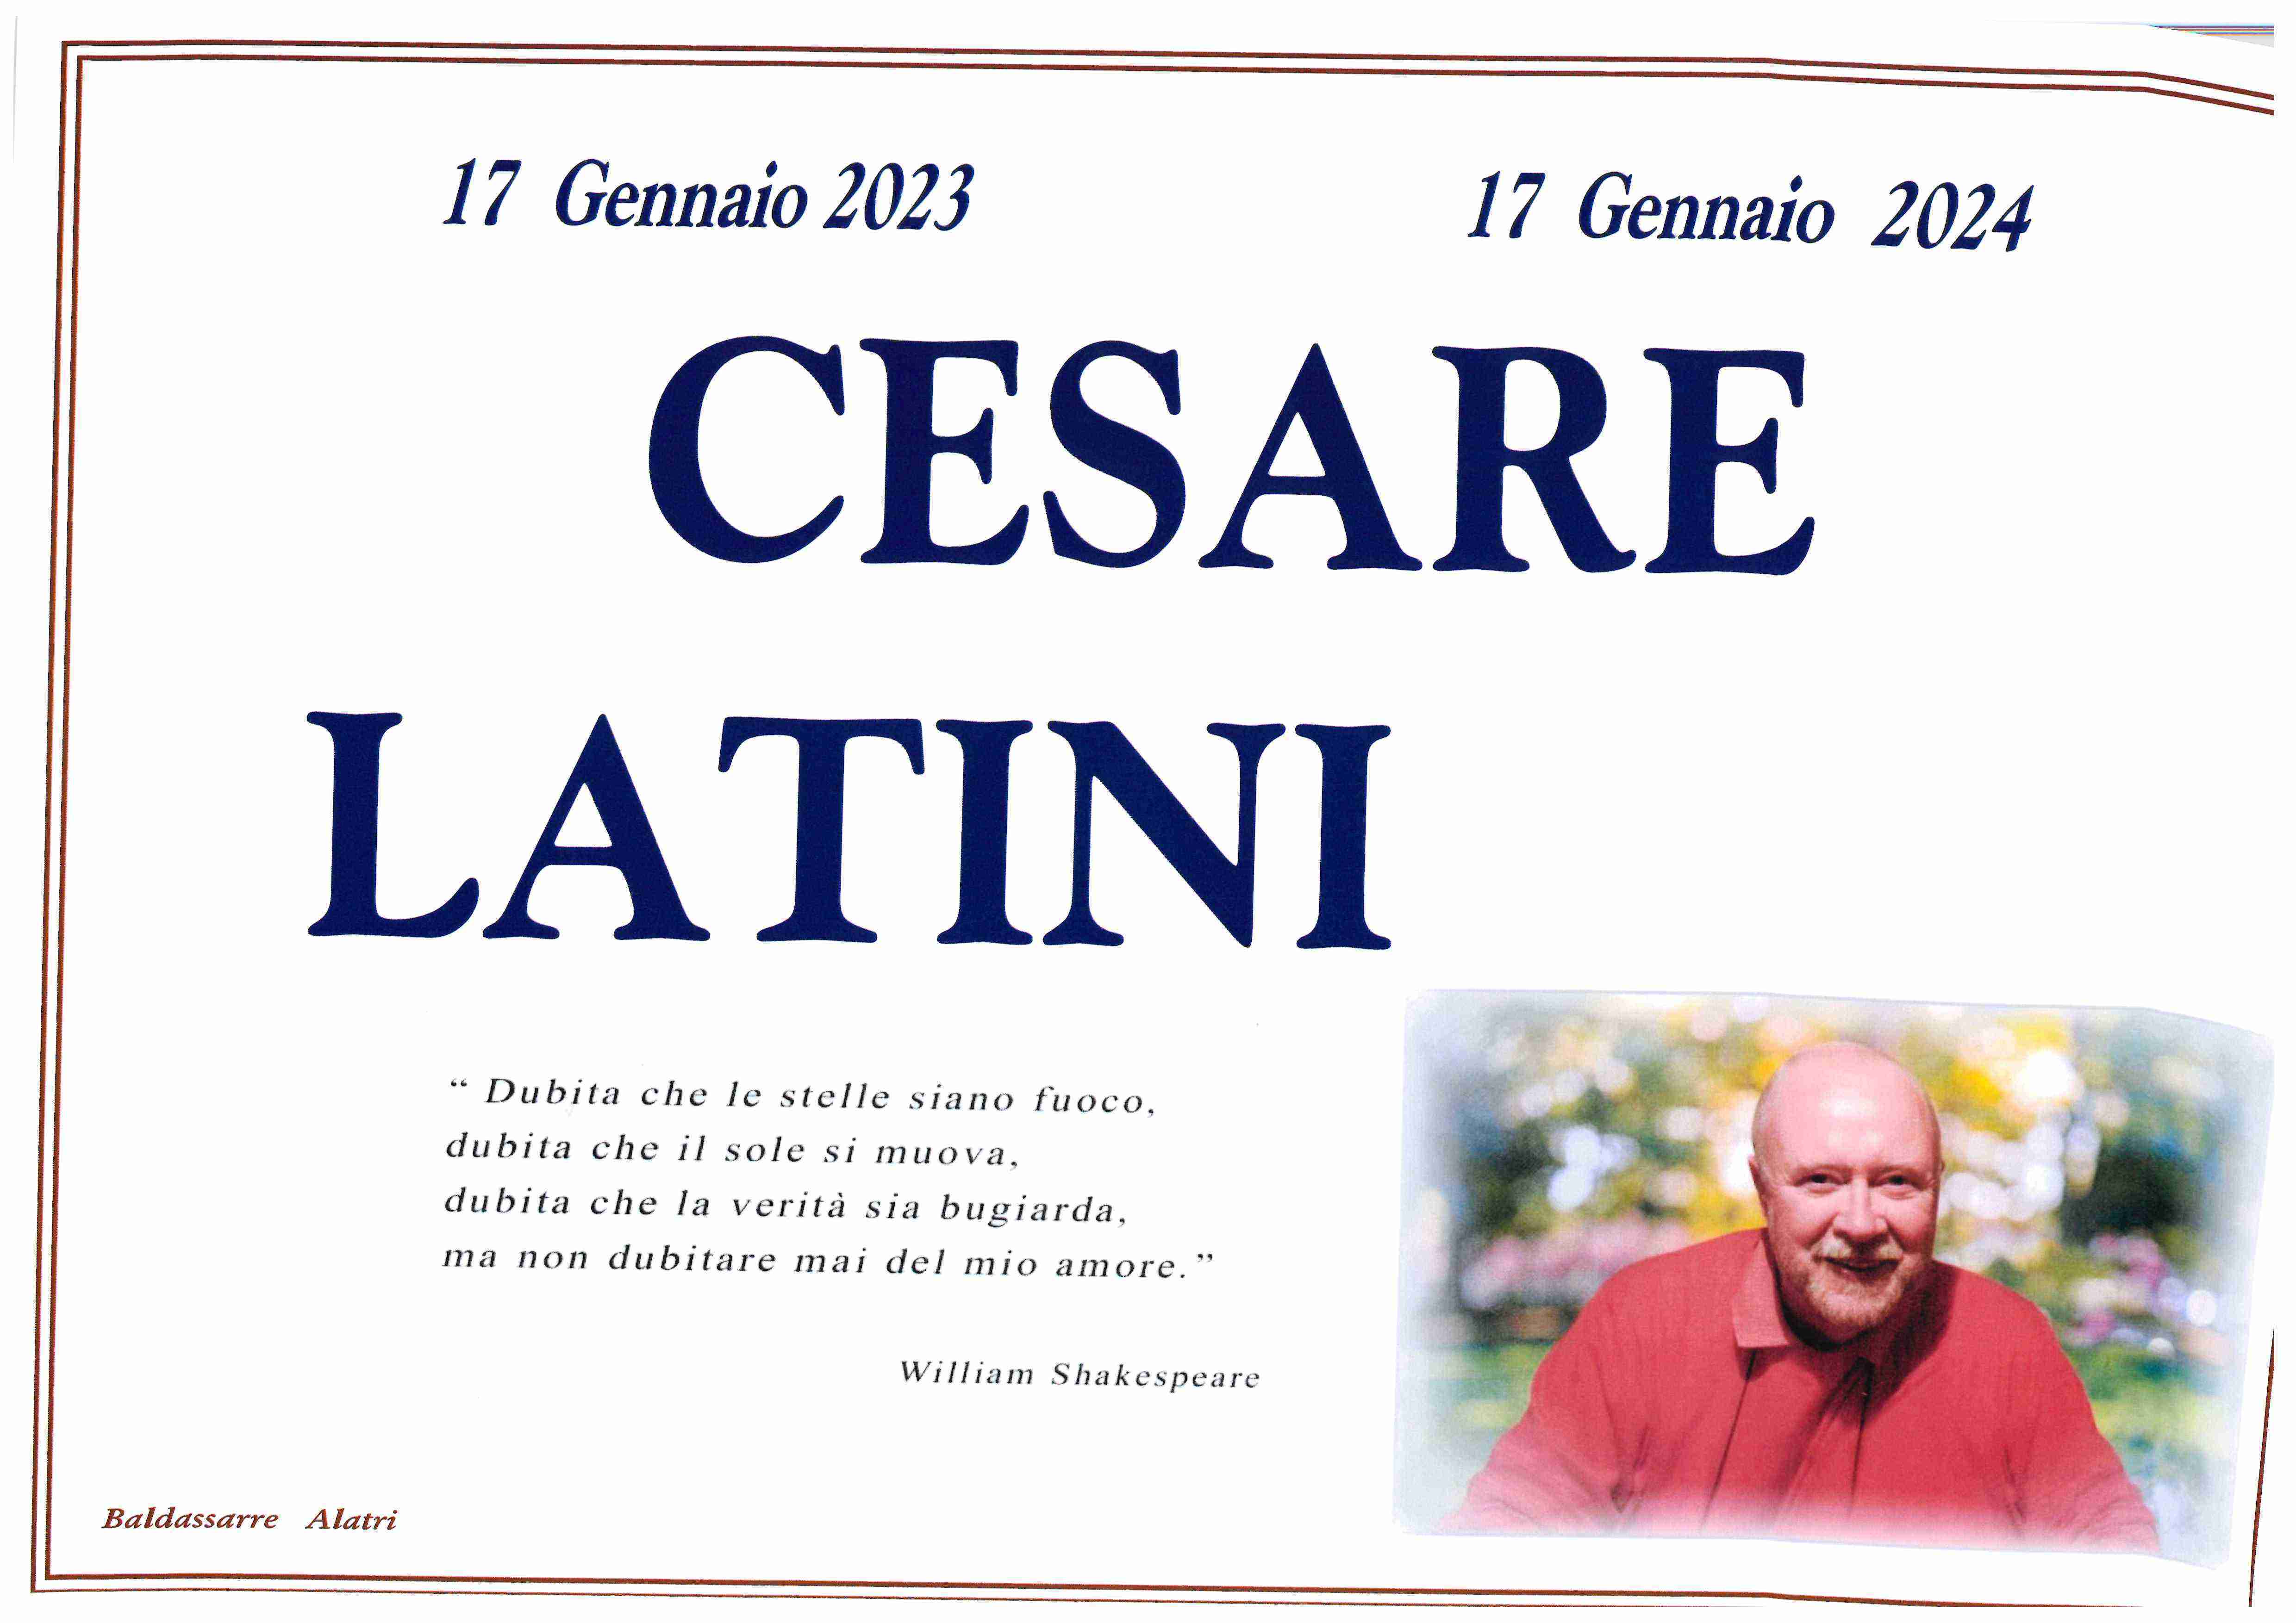 Cesare Latini